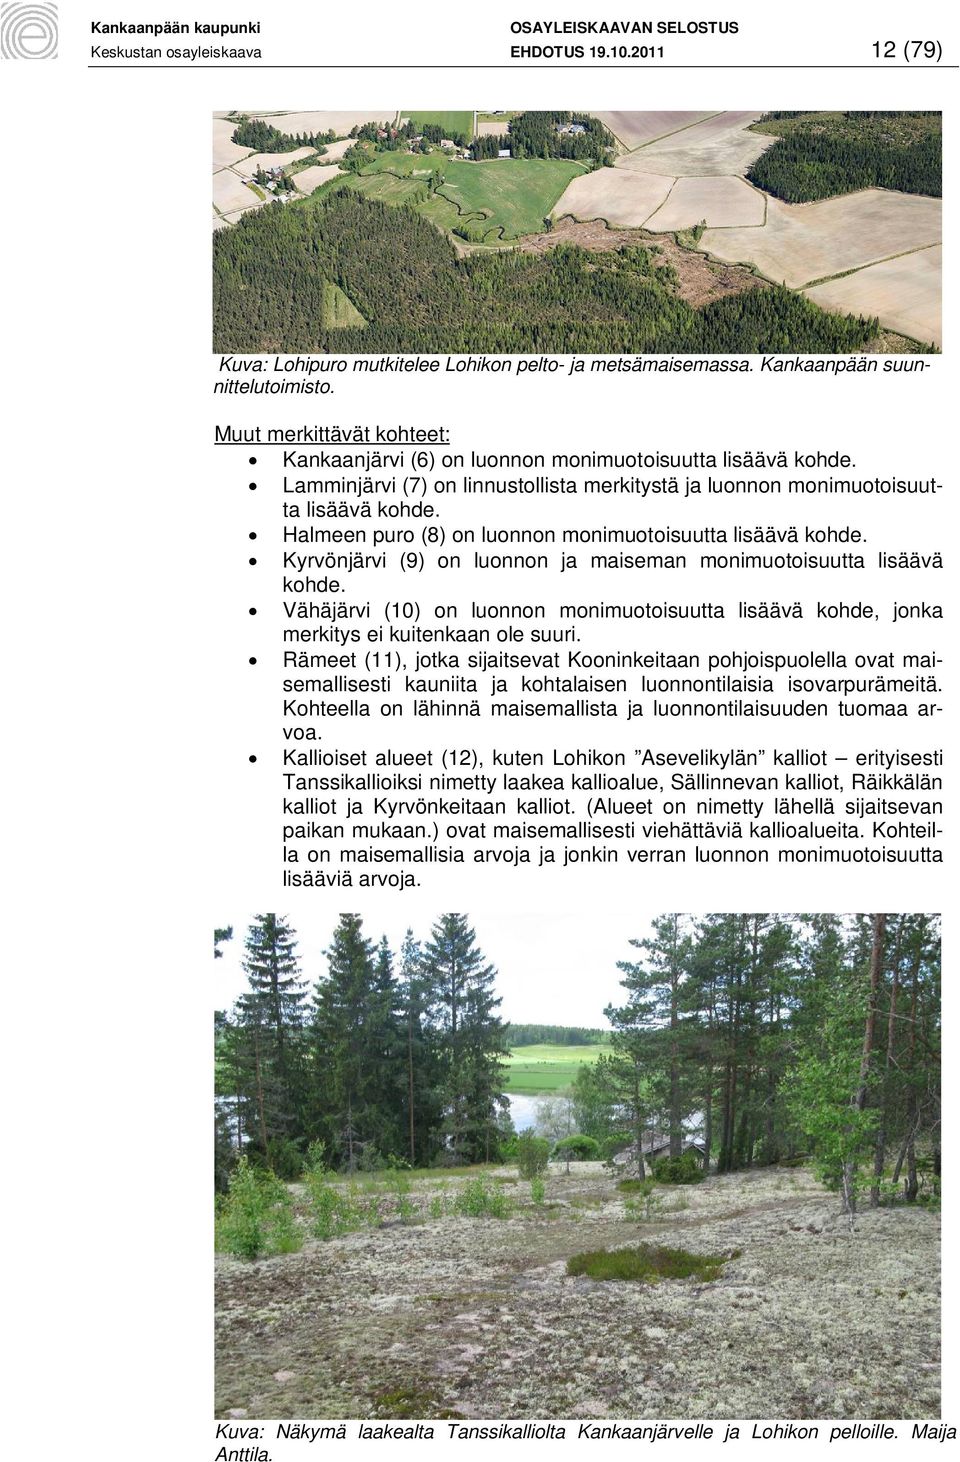 Halmeen puro (8) on luonnon monimuotoisuutta lisäävä kohde. Kyrvönjärvi (9) on luonnon ja maiseman monimuotoisuutta lisäävä kohde.